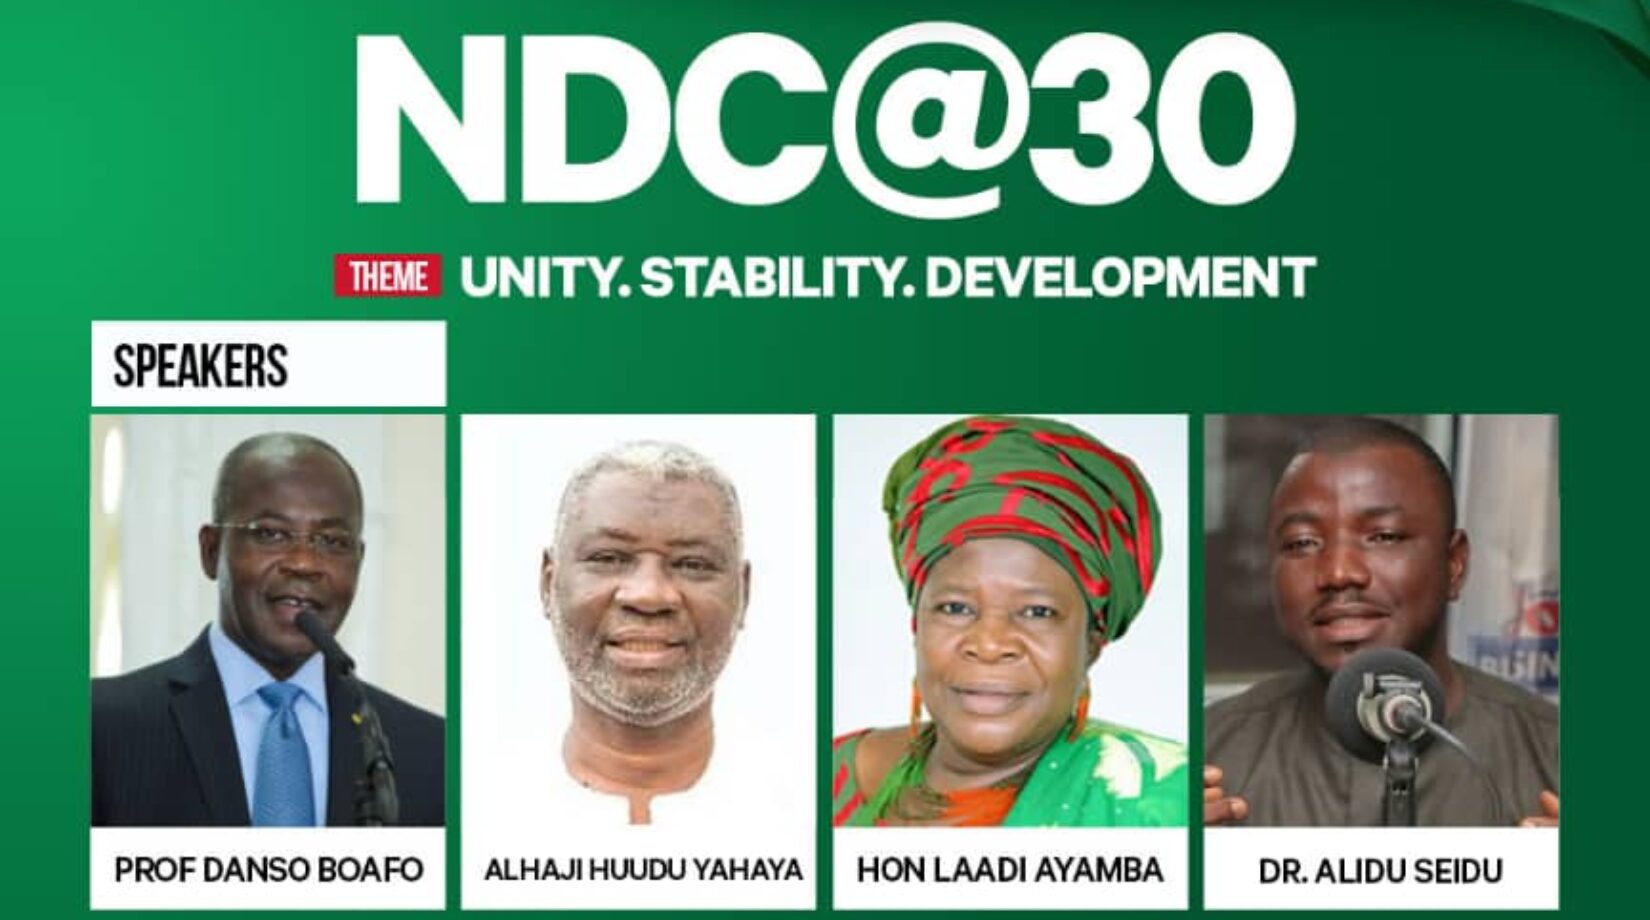 NDC@30:BRIEF HISTORY OF NDC